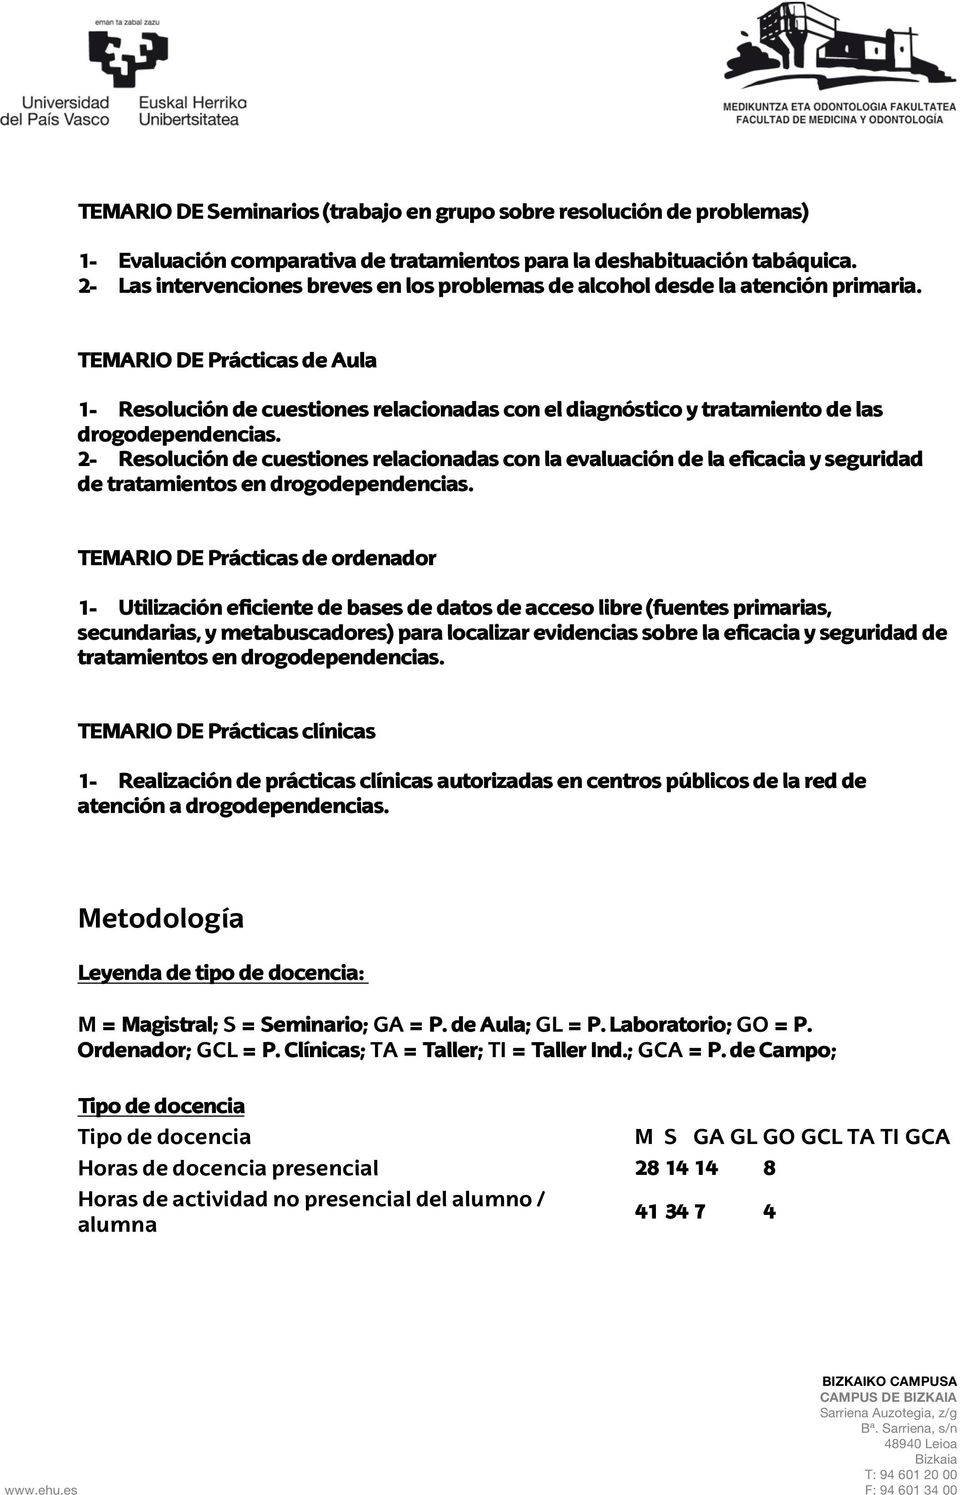 TEMARIO DE Prácticas de Aula 1- Resolución de cuestiones relacionadas con el diagnóstico y tratamiento de las drogodependencias.